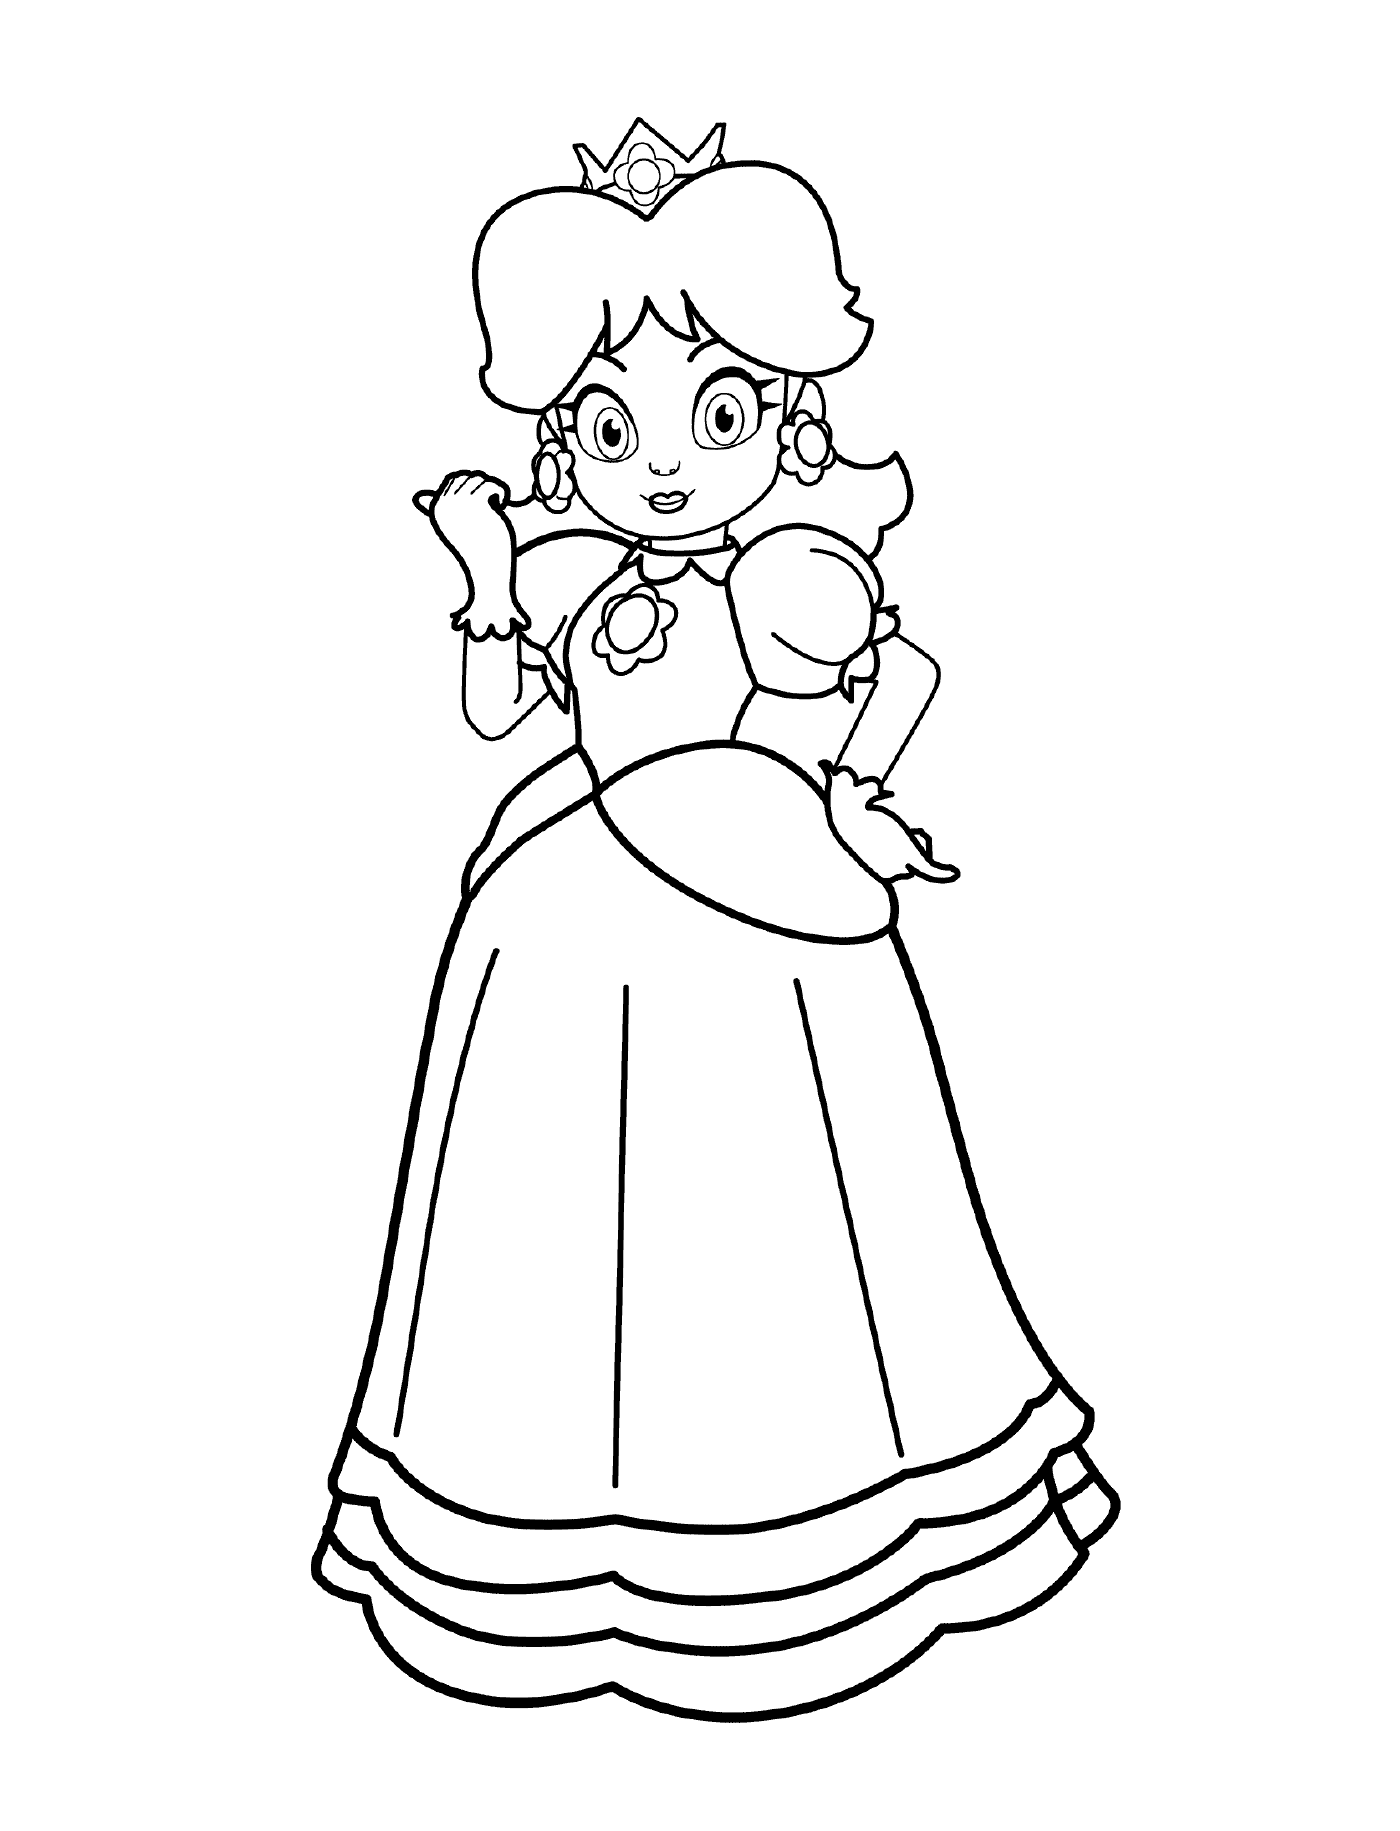  Princesa Daisy, uma mulher em um vestido 